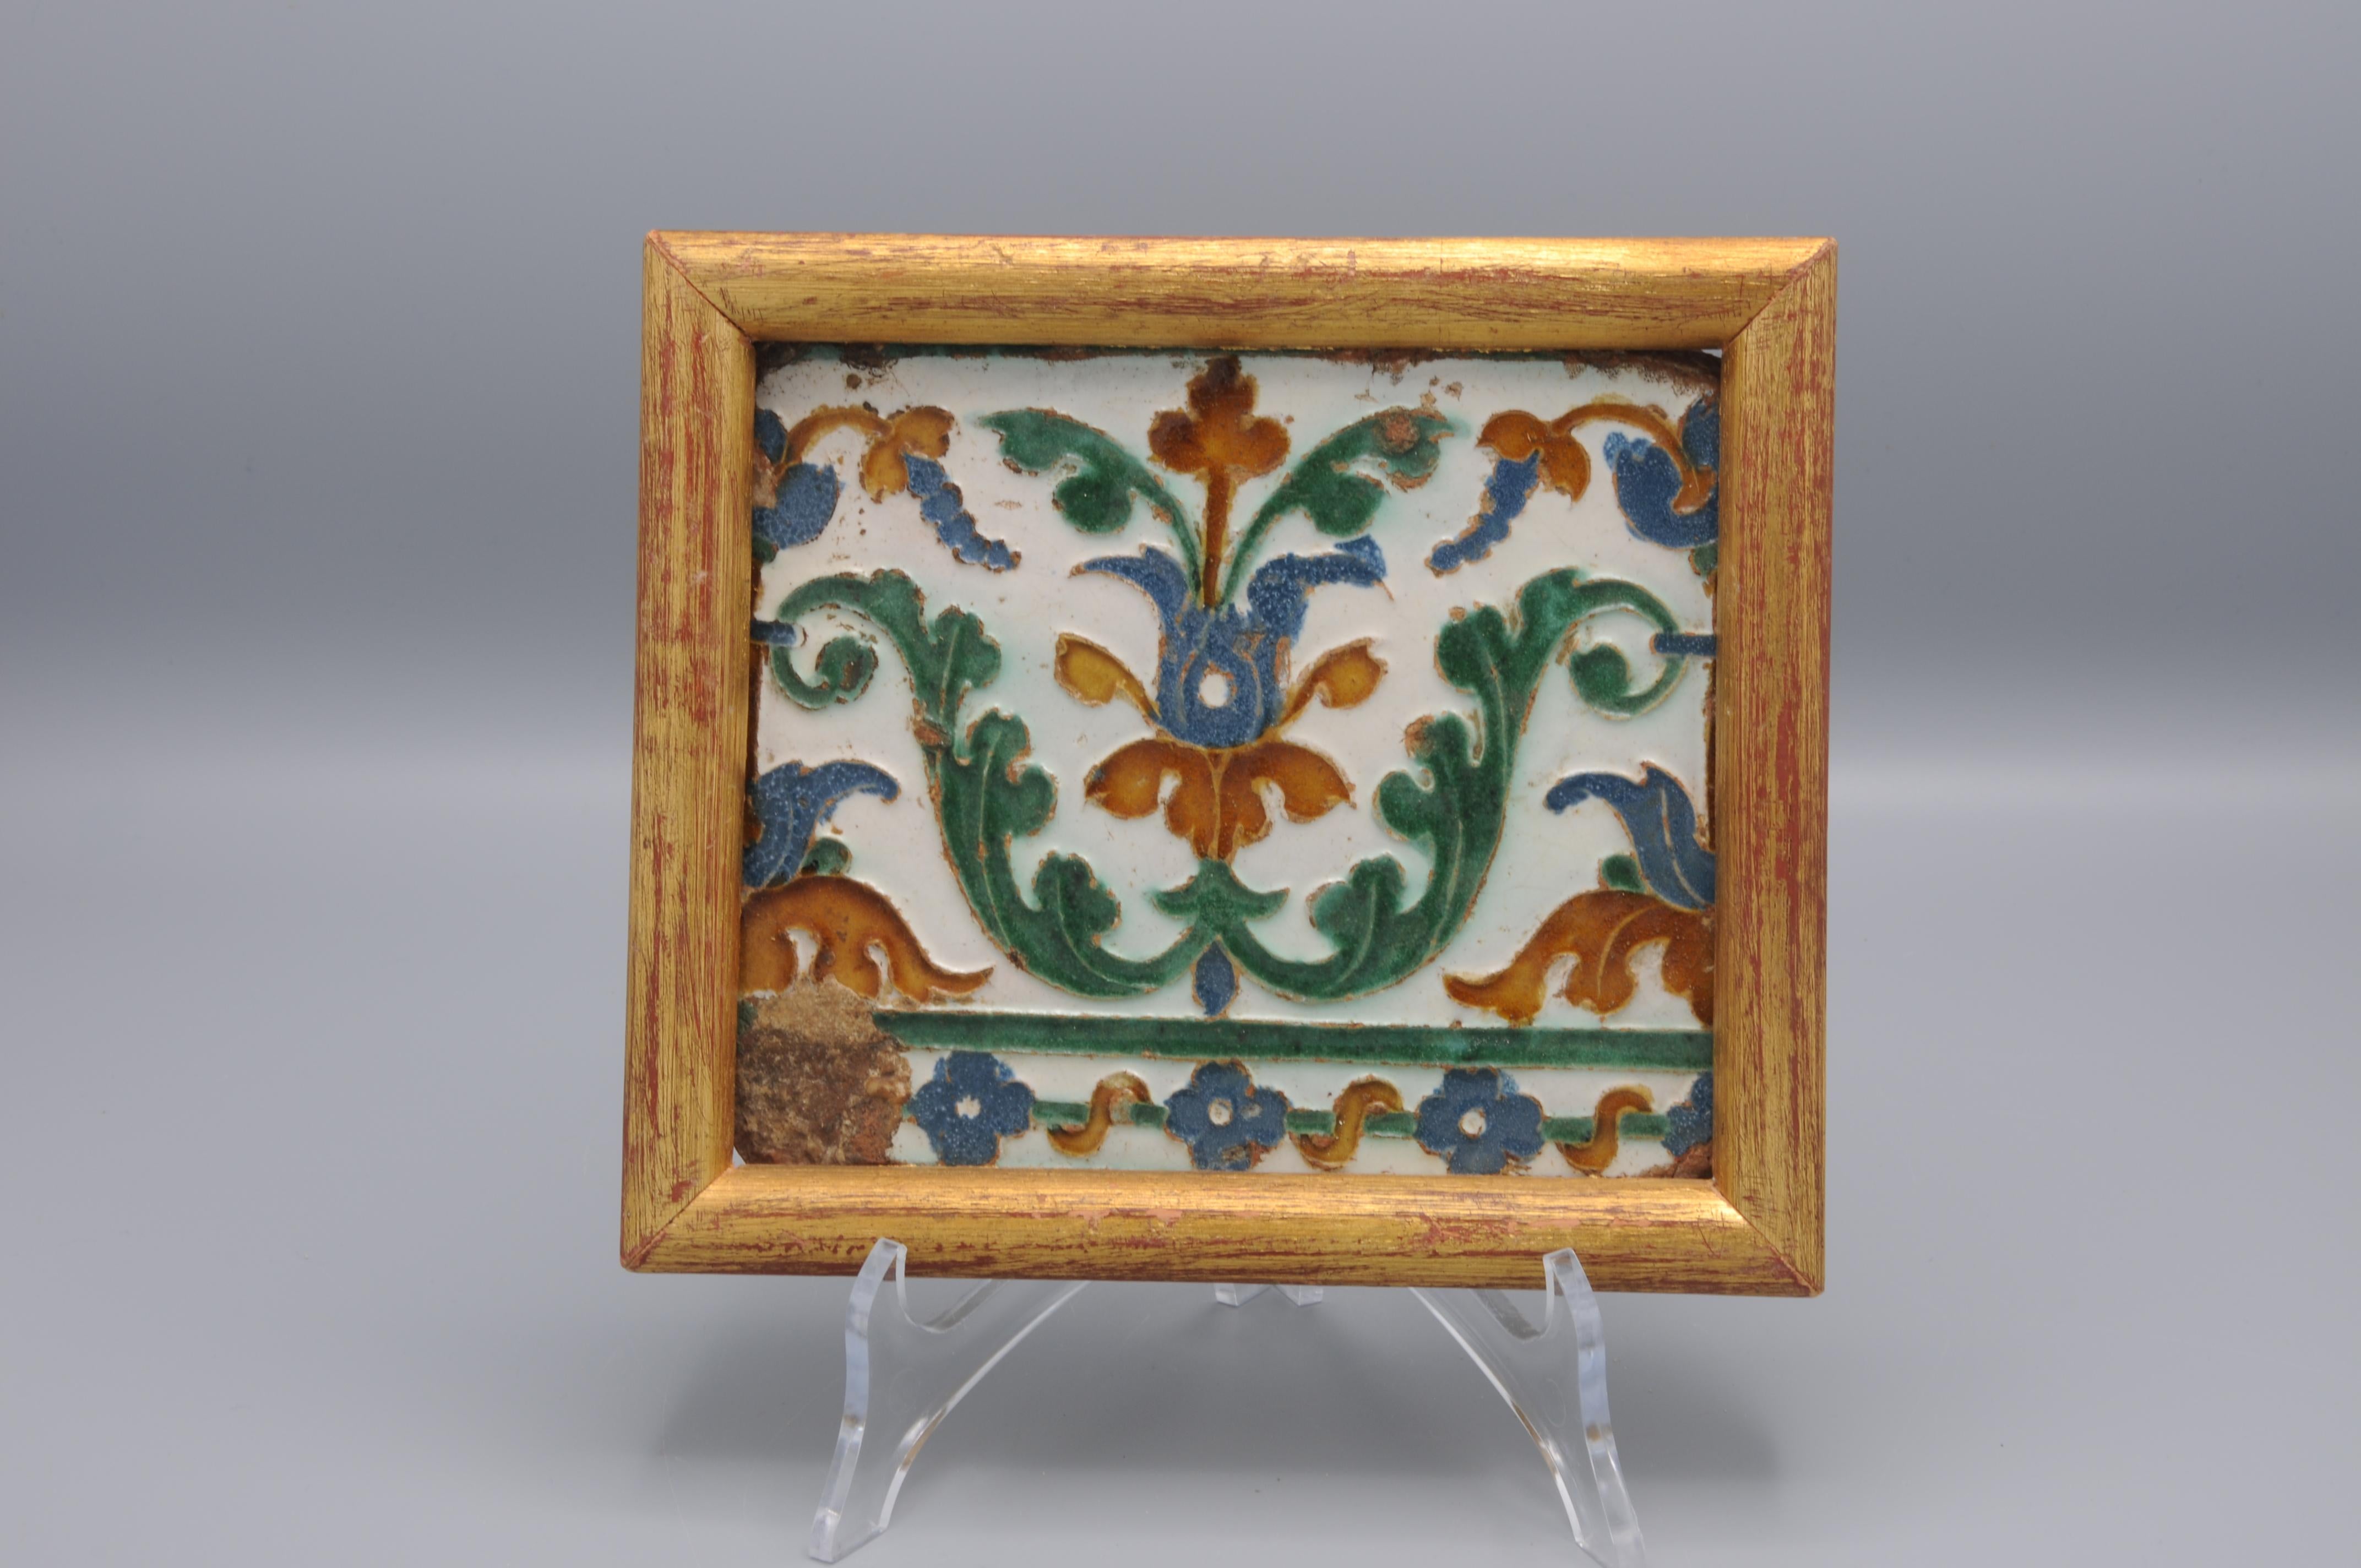 Antiguo azulejo de Arista y cuenca fabricado en Toledo. El azulejo decorado en estilo renacentista con flores estilizadas se fabricó probablemente entre 1550 y 1575. 


